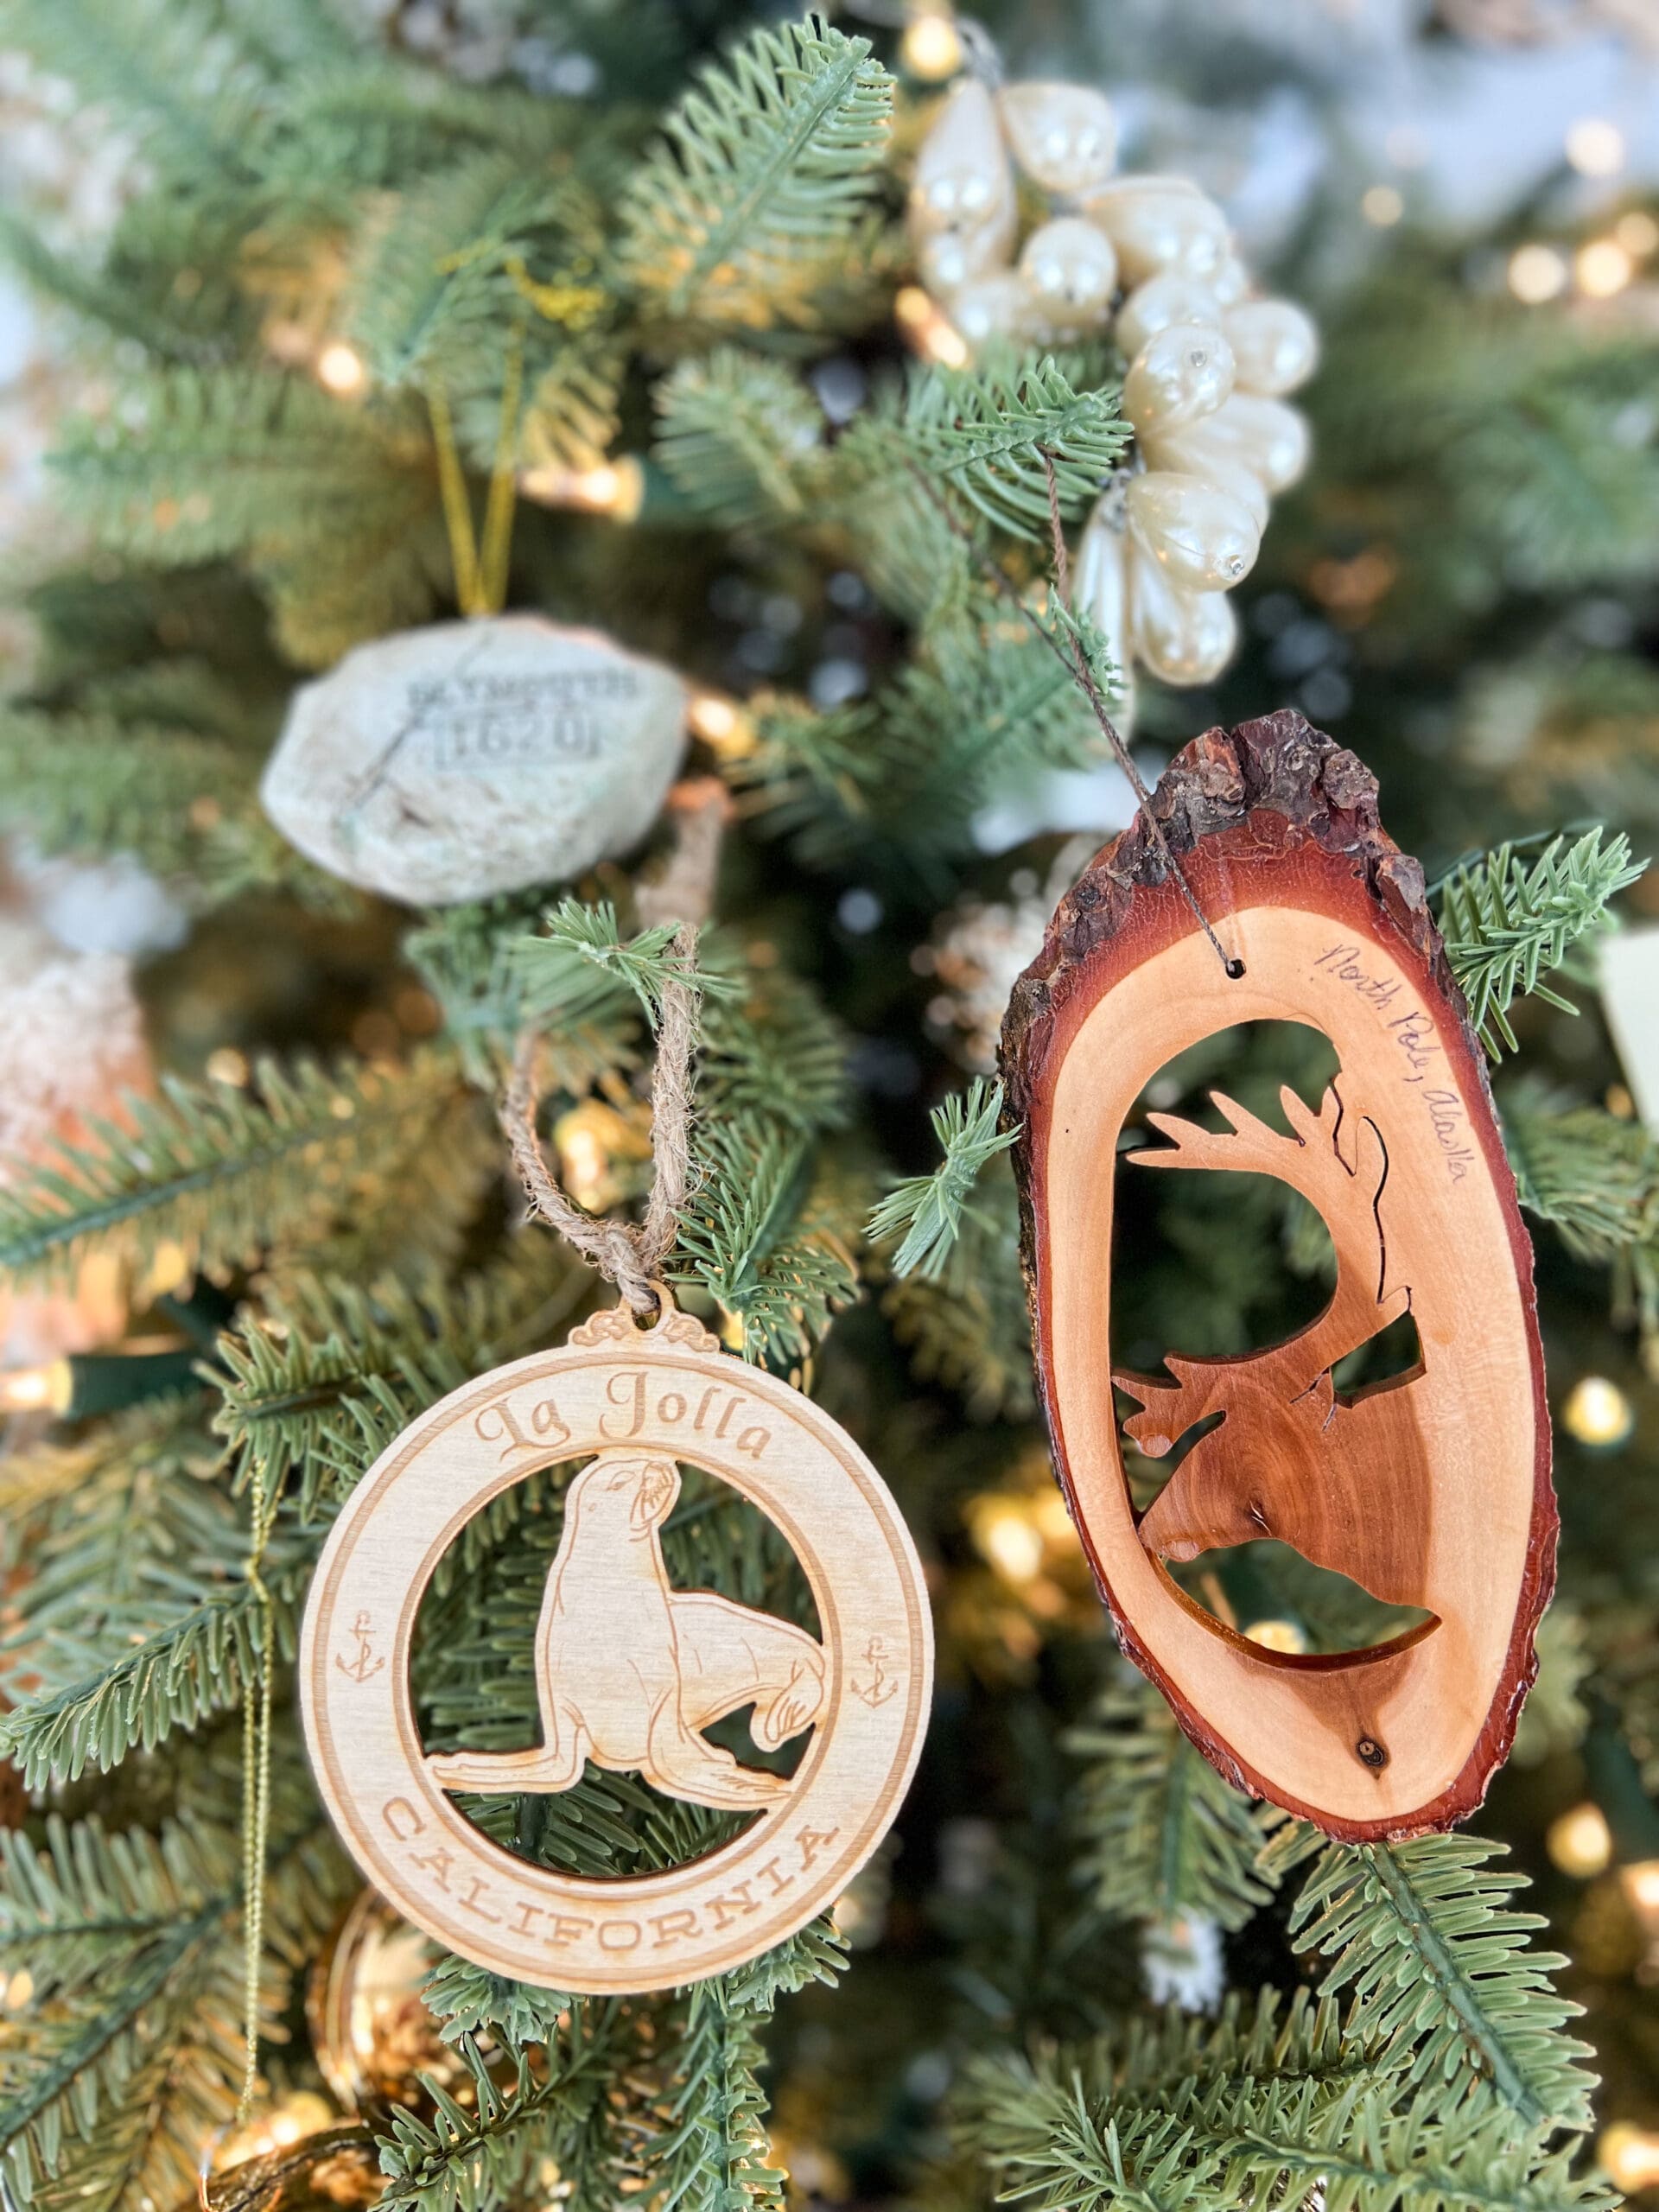 two unique memento ornaments